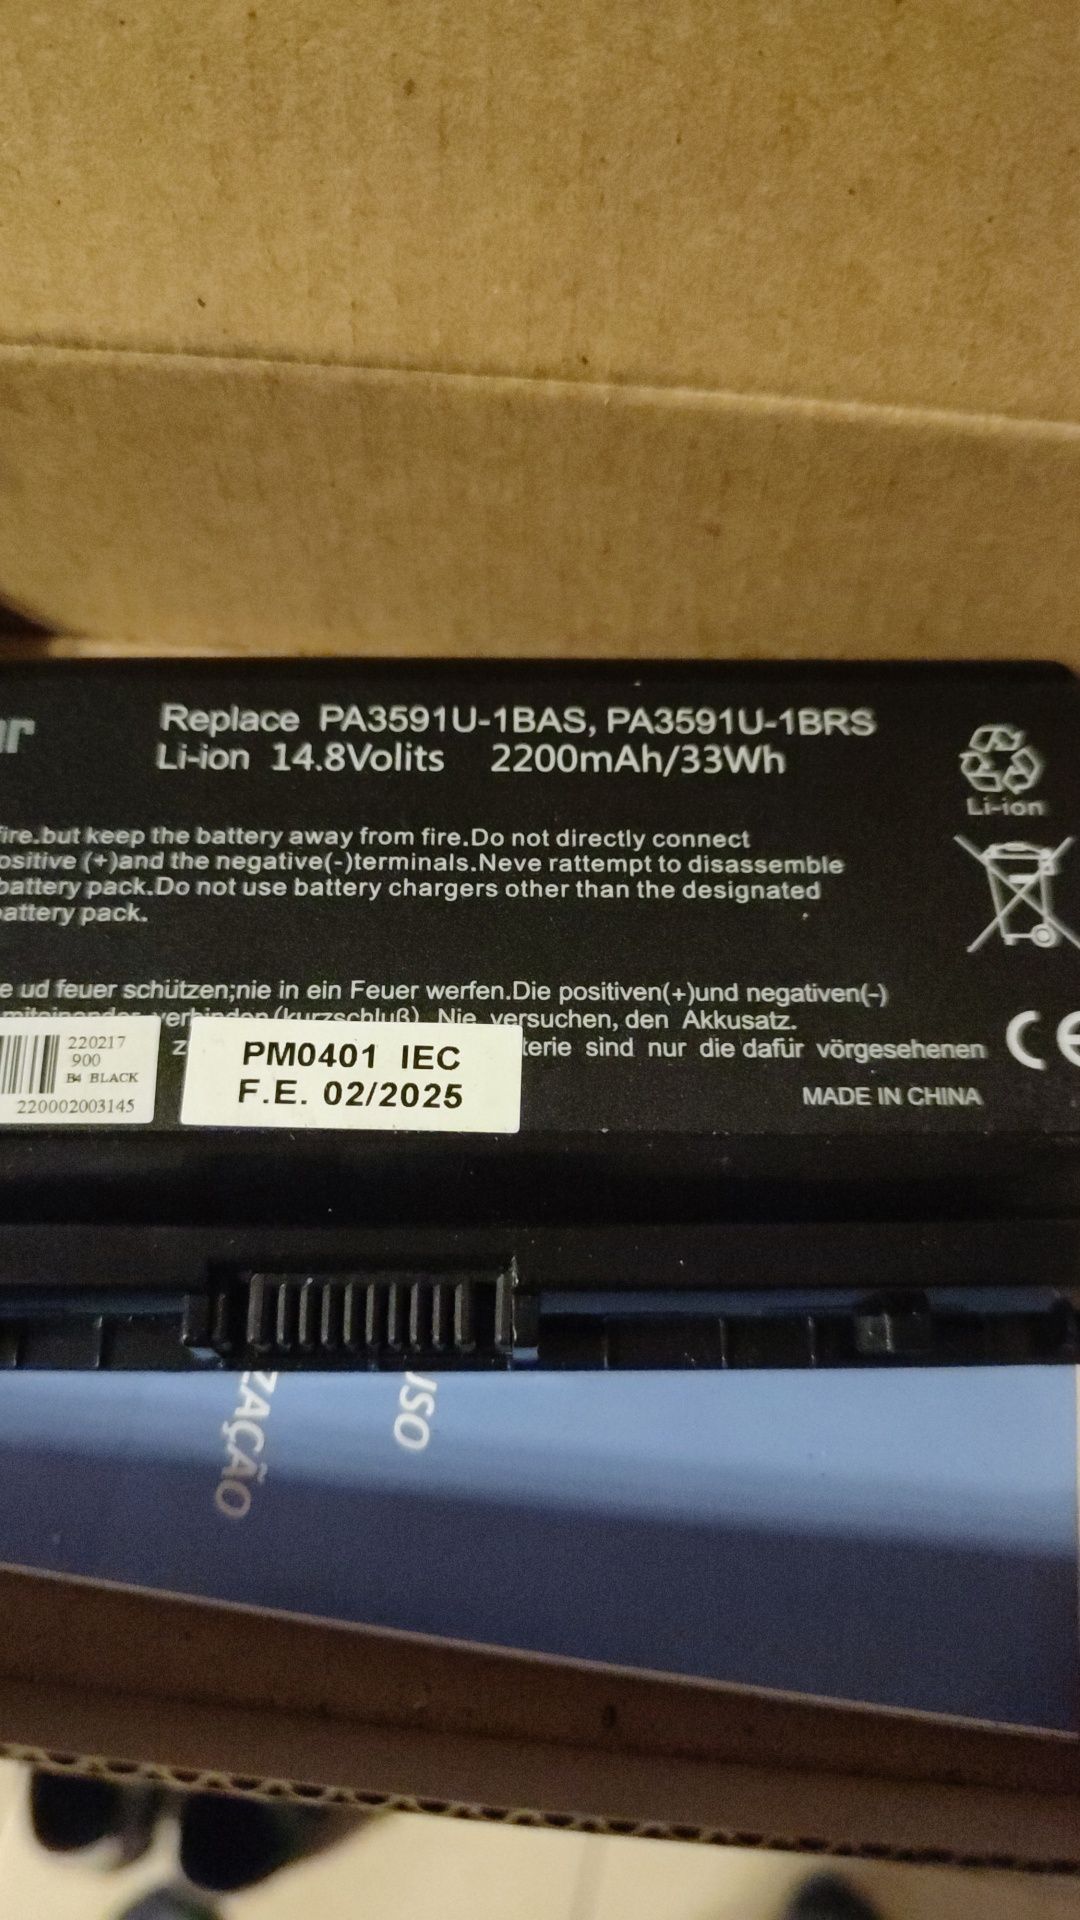 Bateria nova Pa3591u-bas pa3591u-brs toshiba